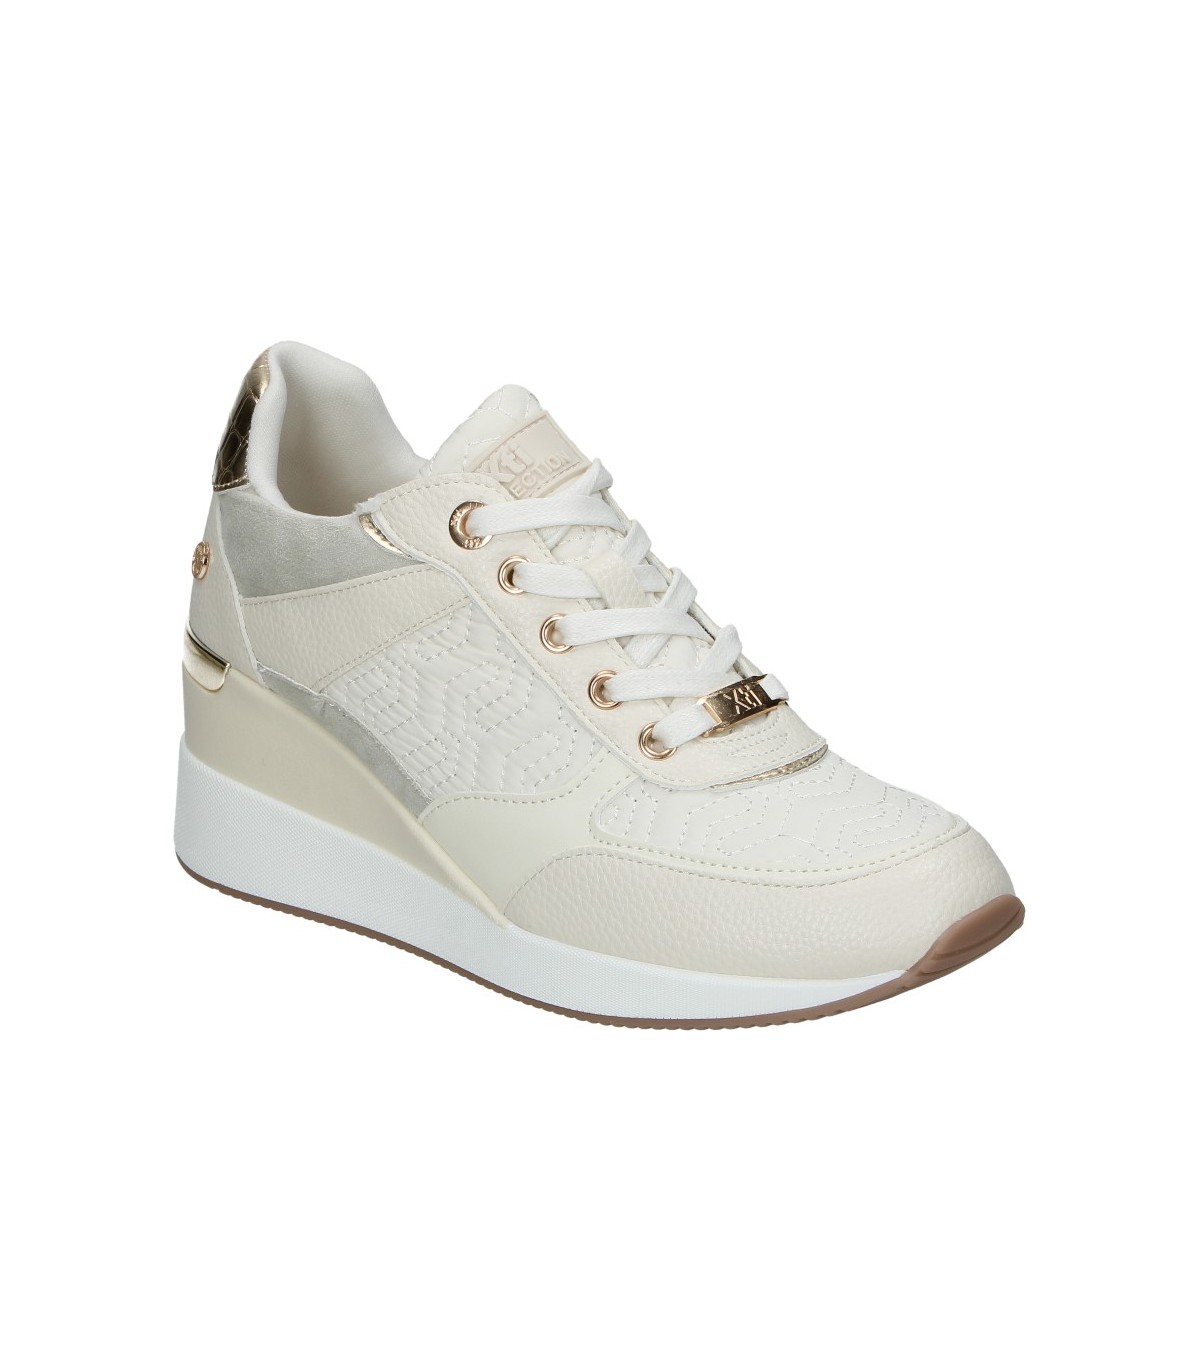 Zapatillas color blanco de sneaker XTI 140870